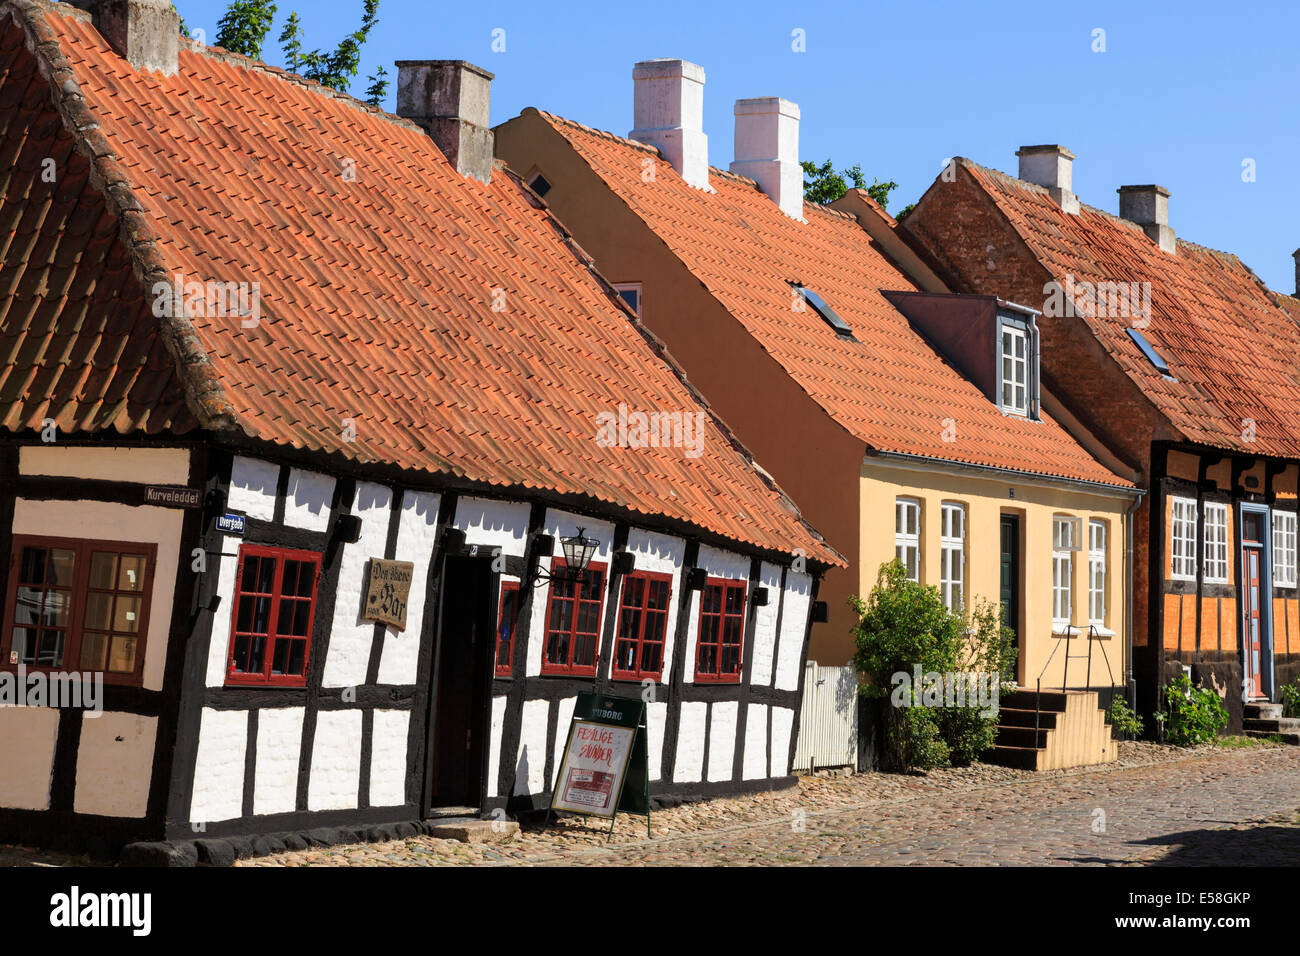 Malerische 17. Jahrhundert Den Skæve bar (die krummen) in gepflasterten Straße von Overgade, Ebeltoft, Jütland, Dänemark, Skandinavien, Europa Stockfoto